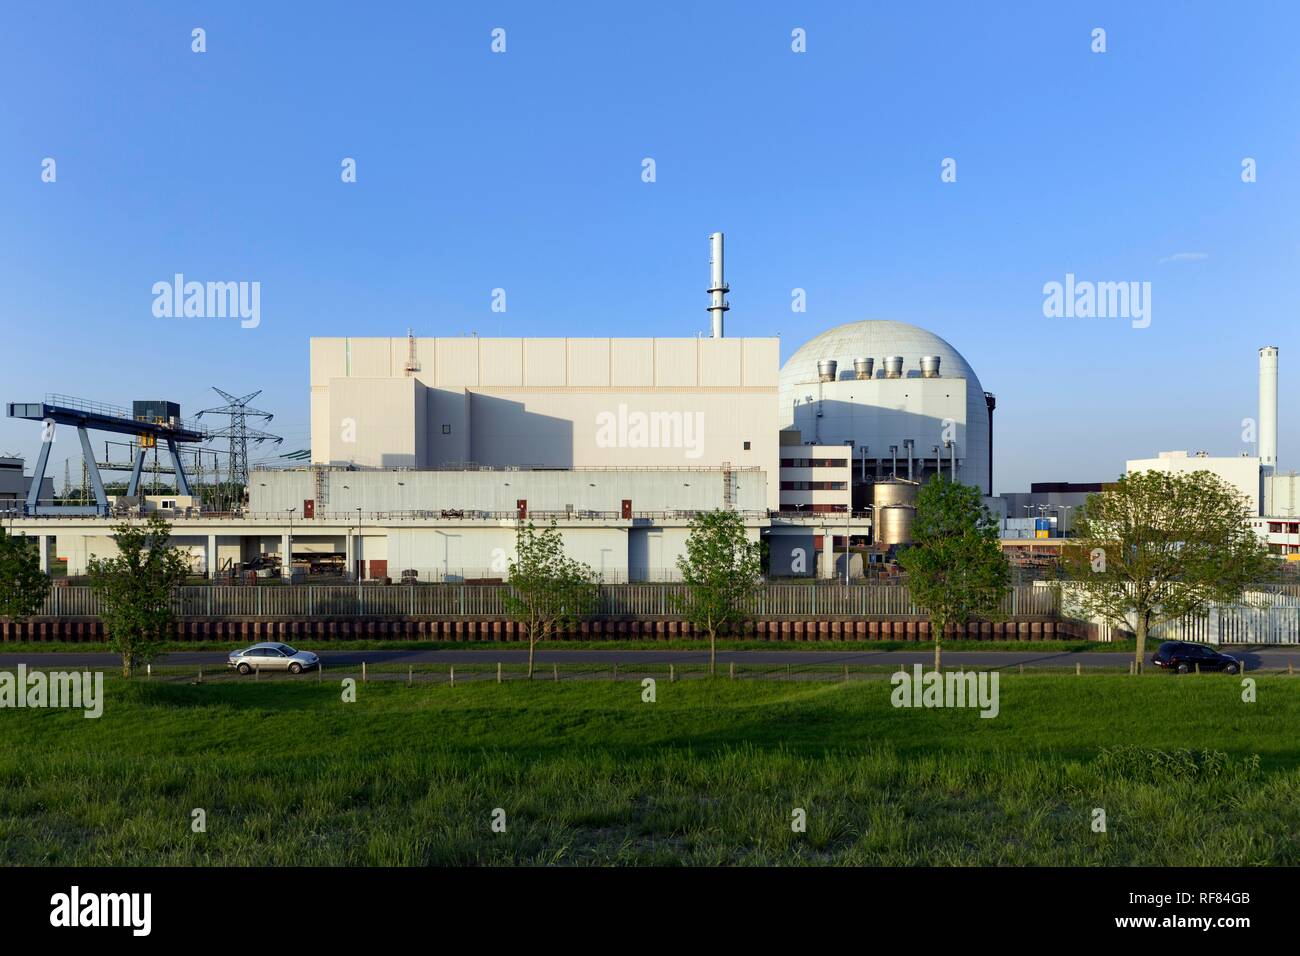 Brokdorf nuclear power plant, Brokdorf, district of Steinburg, Schleswig-Holstein, Germany Stock Photo